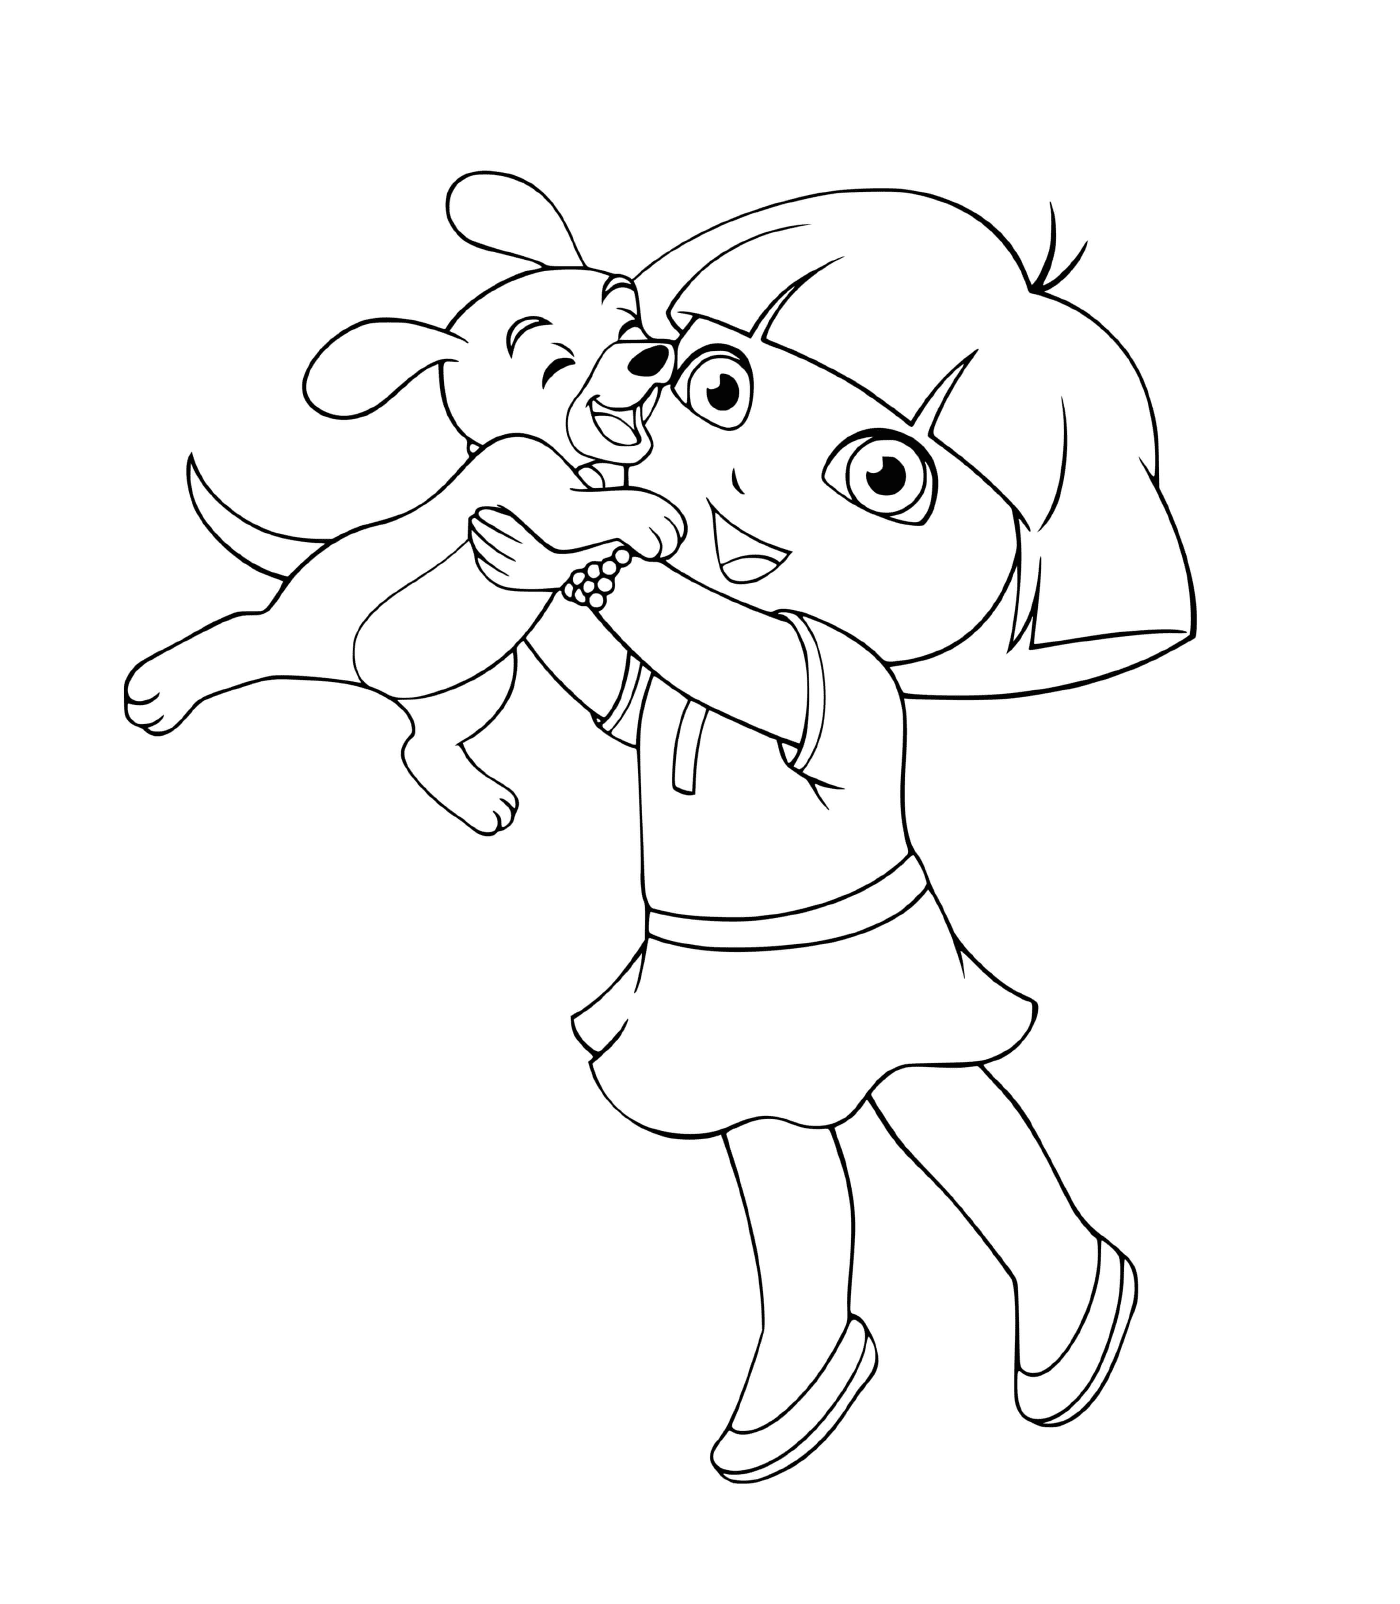  Dora besa a su cachorro con ternura 